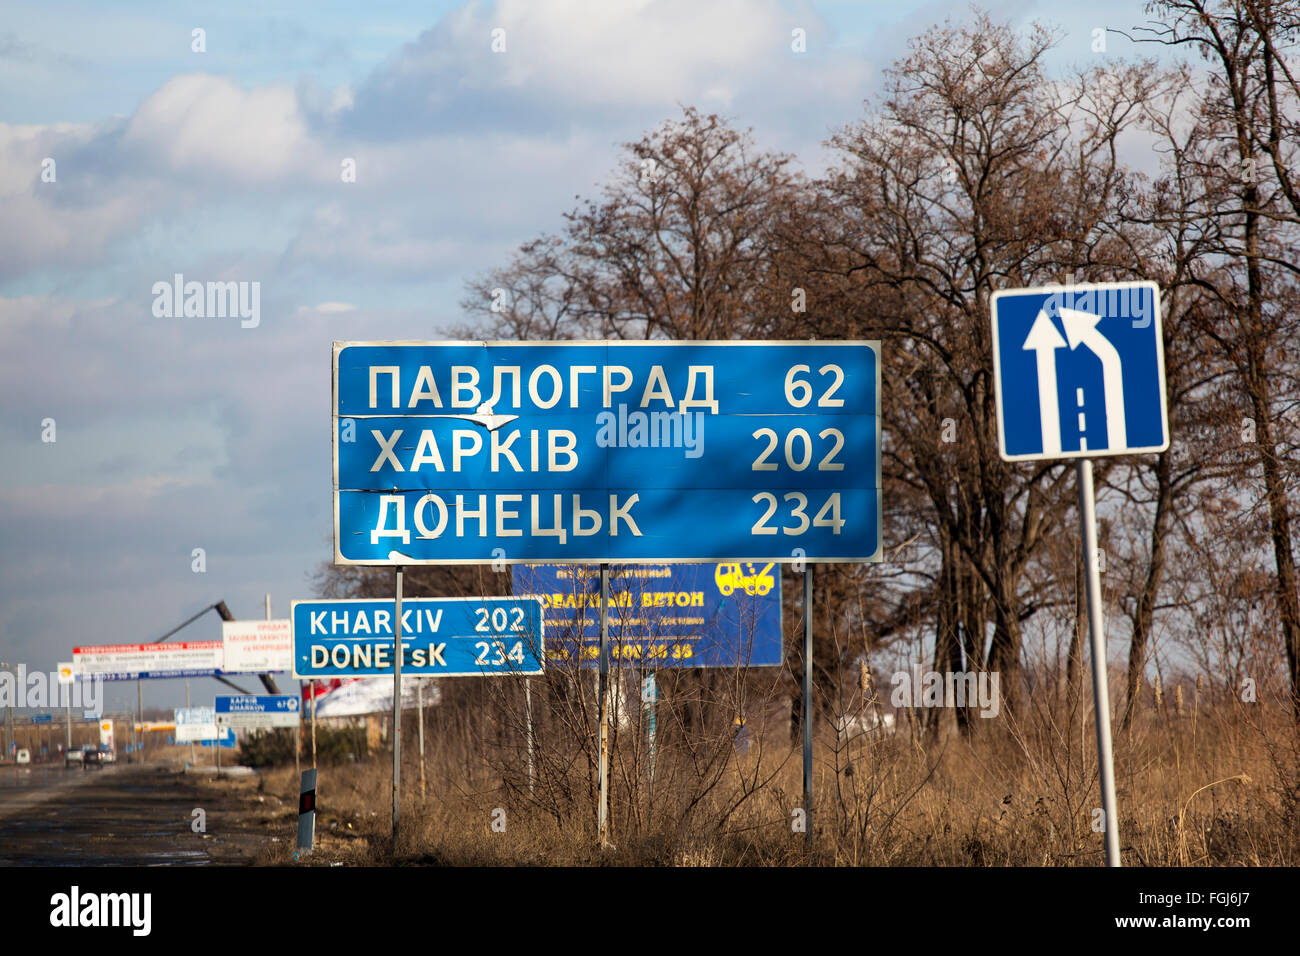 Dnepropetrovsk, Ukraine - 7. Februar 2016: Ein Schild mit den Worten: Pavlograd, Harkiv, Doneck Fotografie ergriffen wurden, während der Fahrt, Bewegungsunschärfe Stockfoto